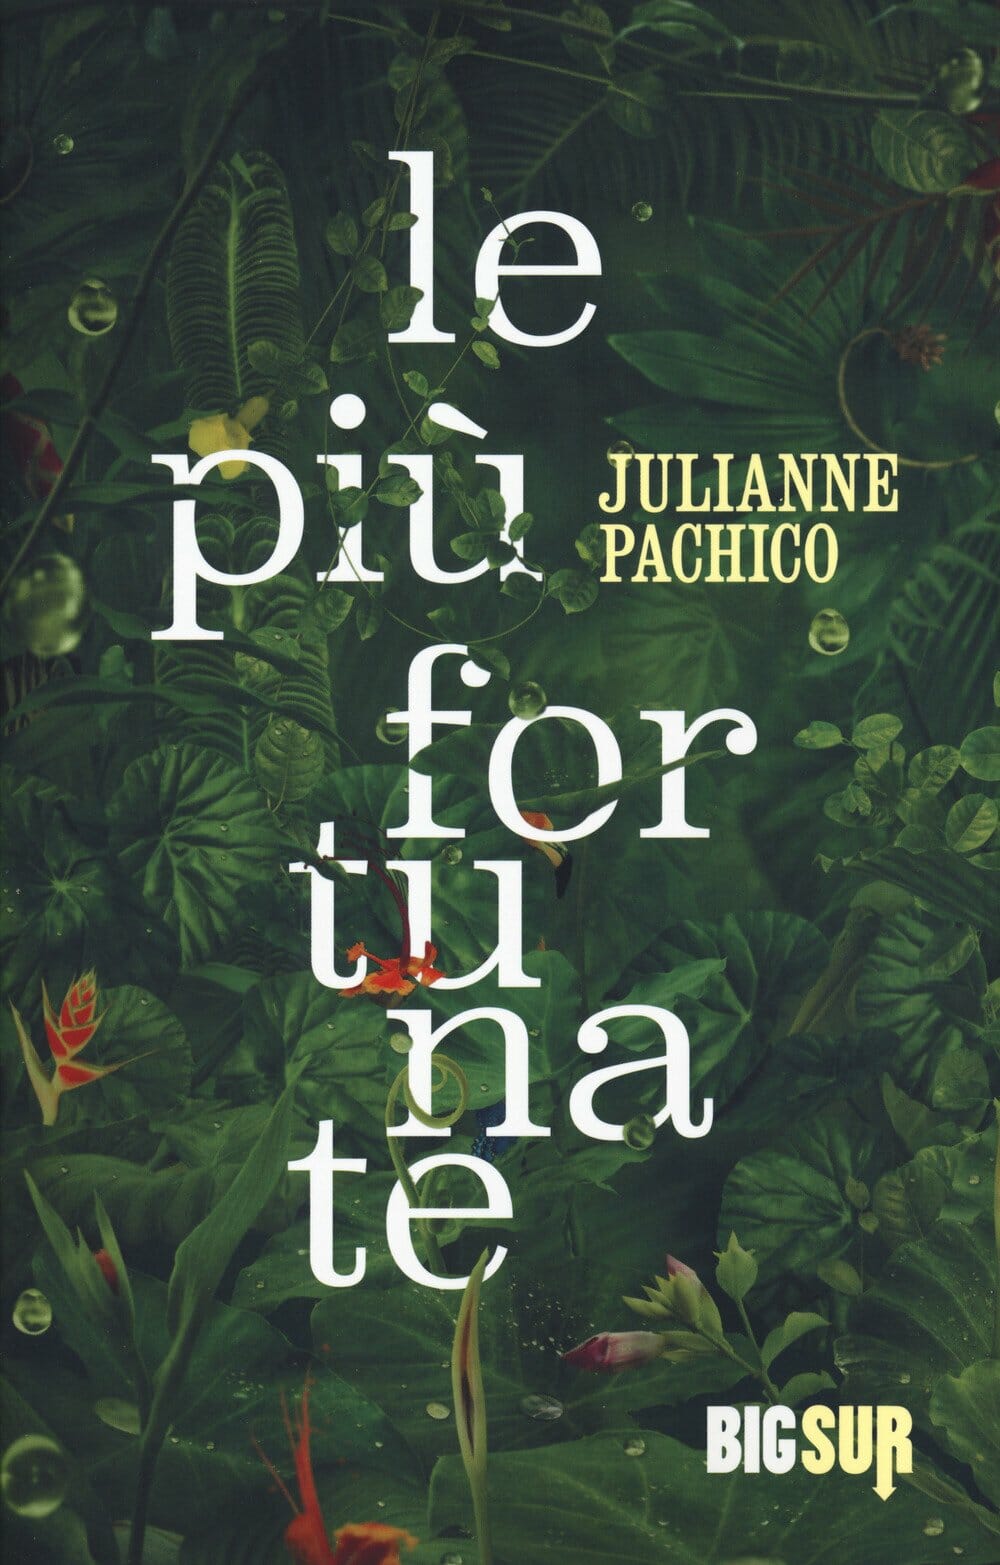 Julianne Pachico